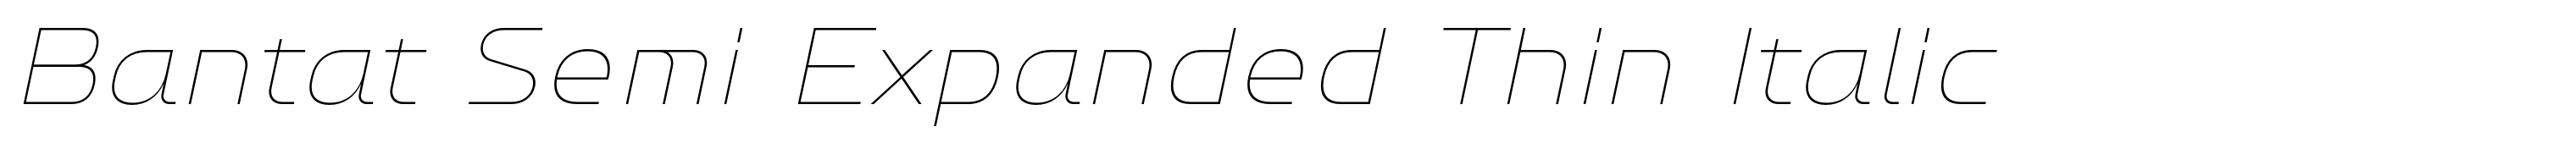 Bantat Semi Expanded Thin Italic